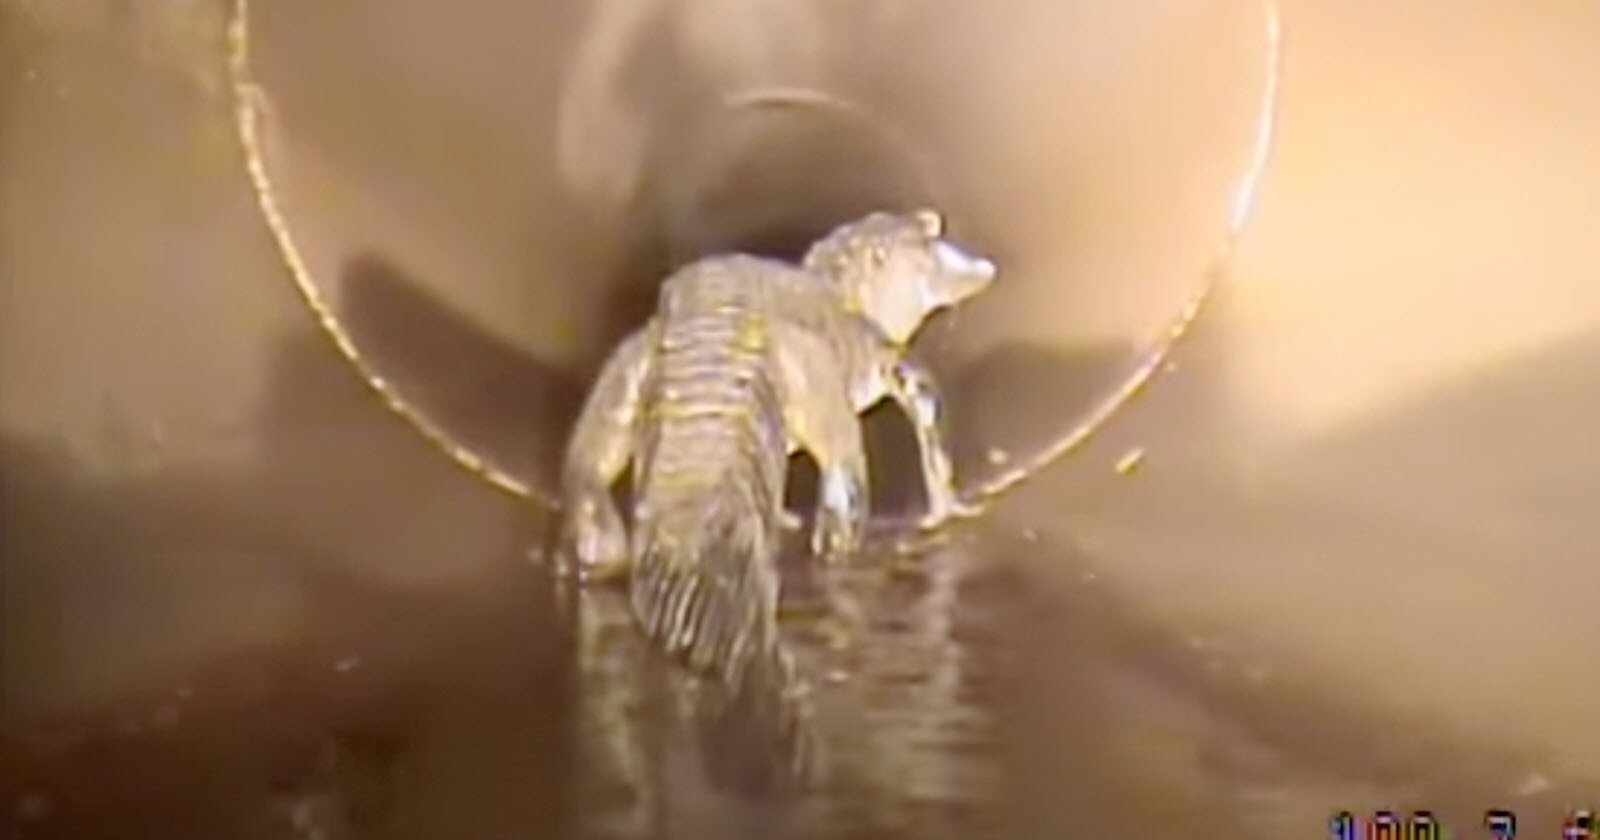 Robotic Camera Encounters 5-Foot Alligator Inside a Storm Drain